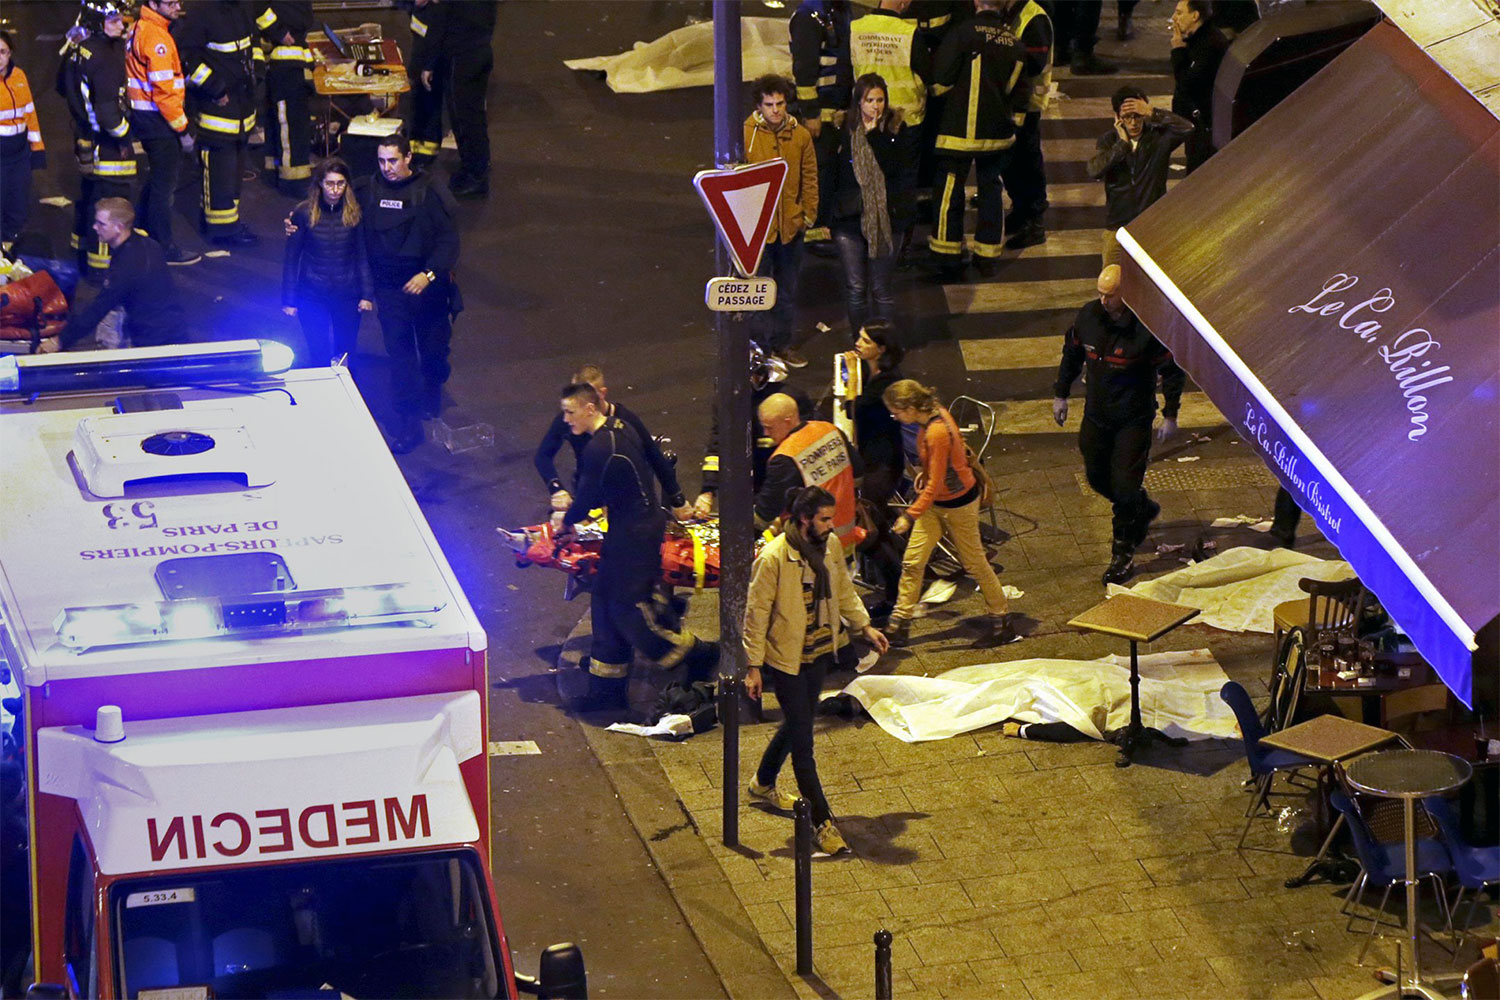 13 Noiembrie 2015 - Atac terorist in Paris - GRAV SI INGROZITOR!